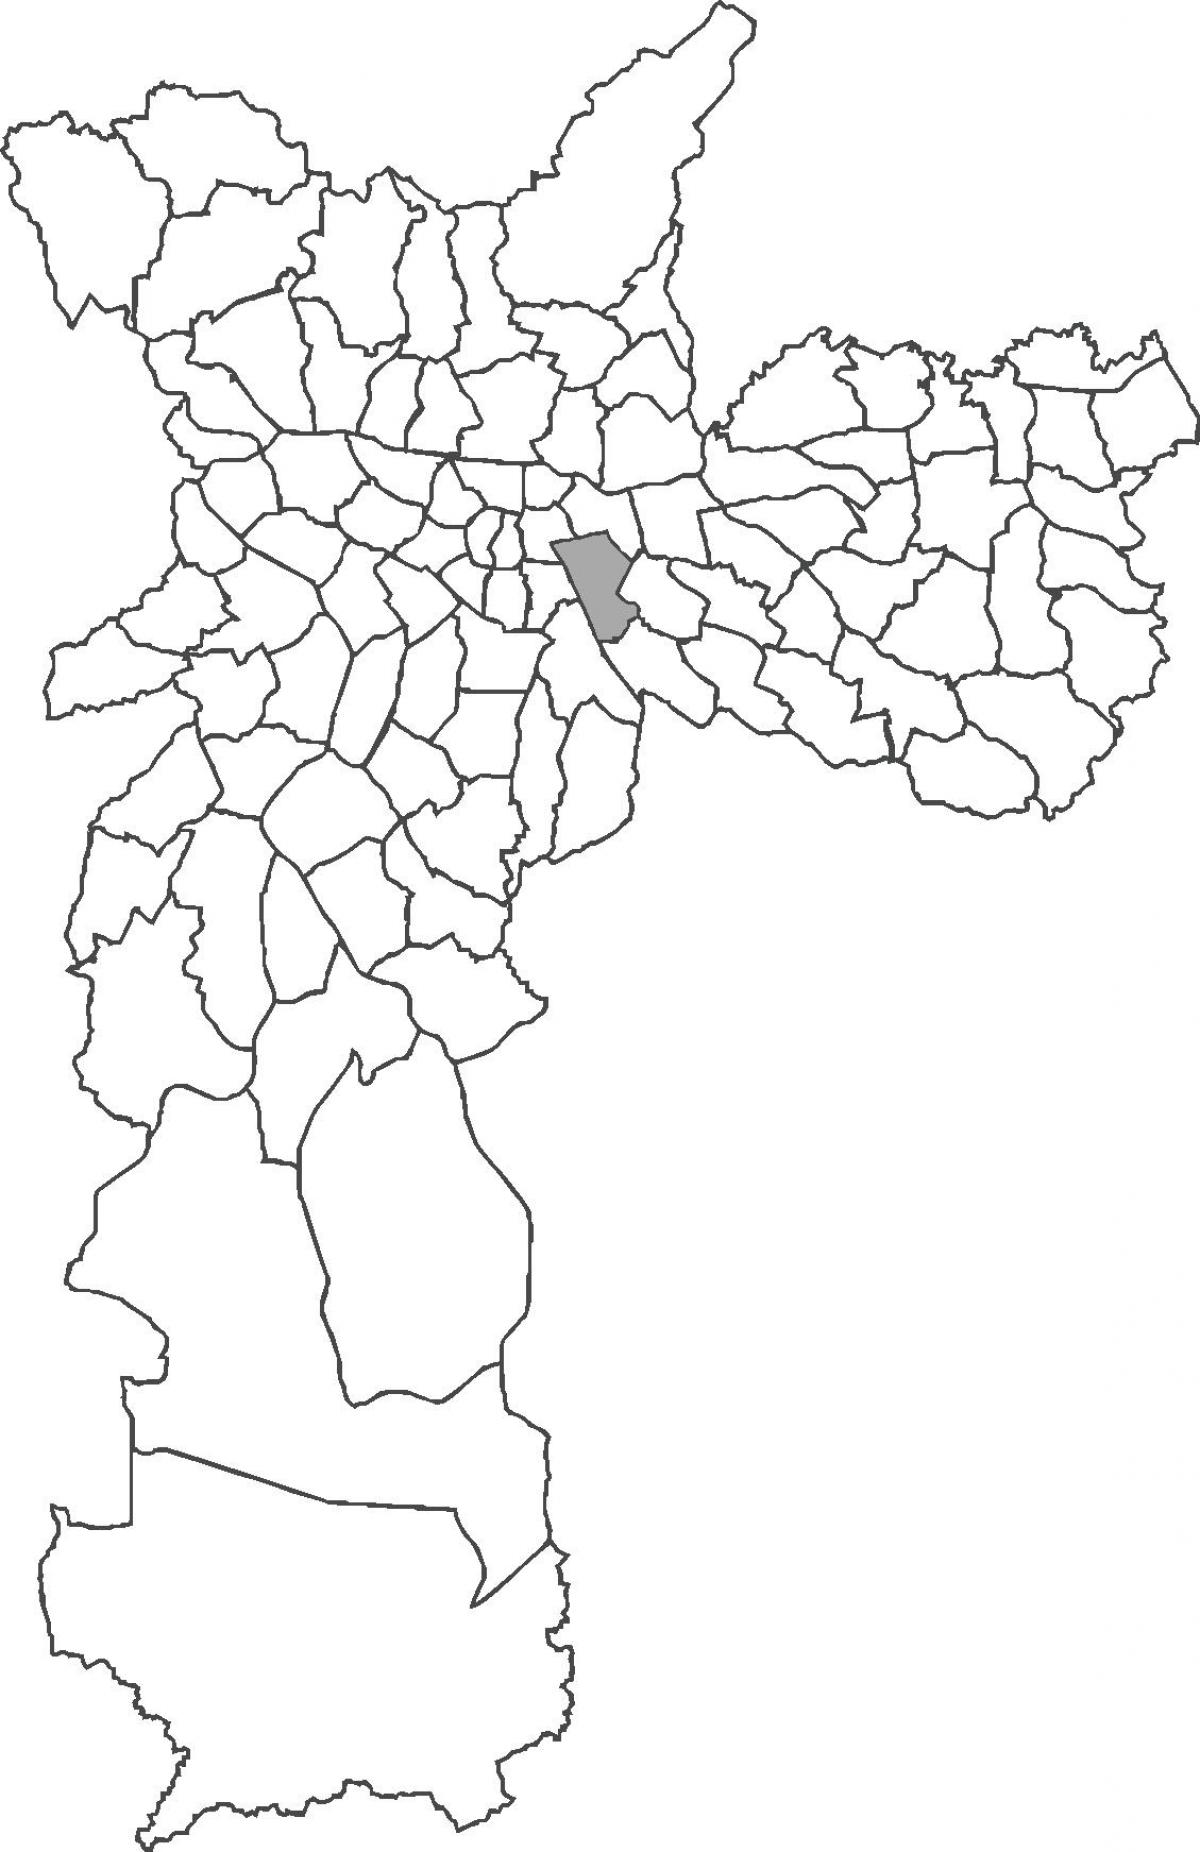 નકશો Mooca જિલ્લા